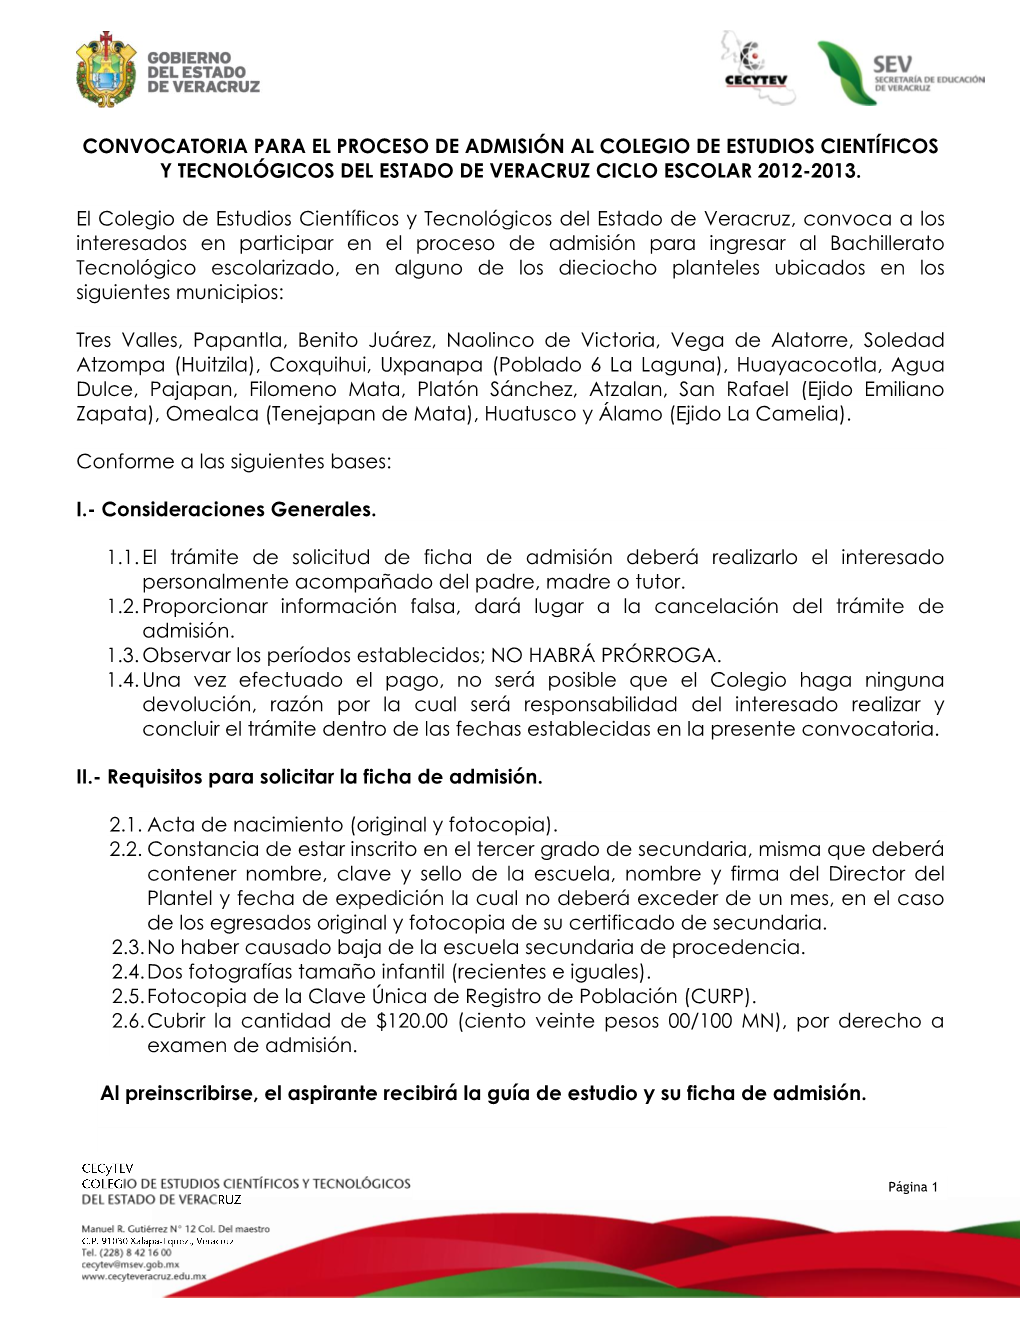 Convocatoria Para El Proceso De Admisión Al Colegio De Estudios Científicos Y Tecnológicos Del Estado De Veracruz Ciclo Escolar 2012-2013